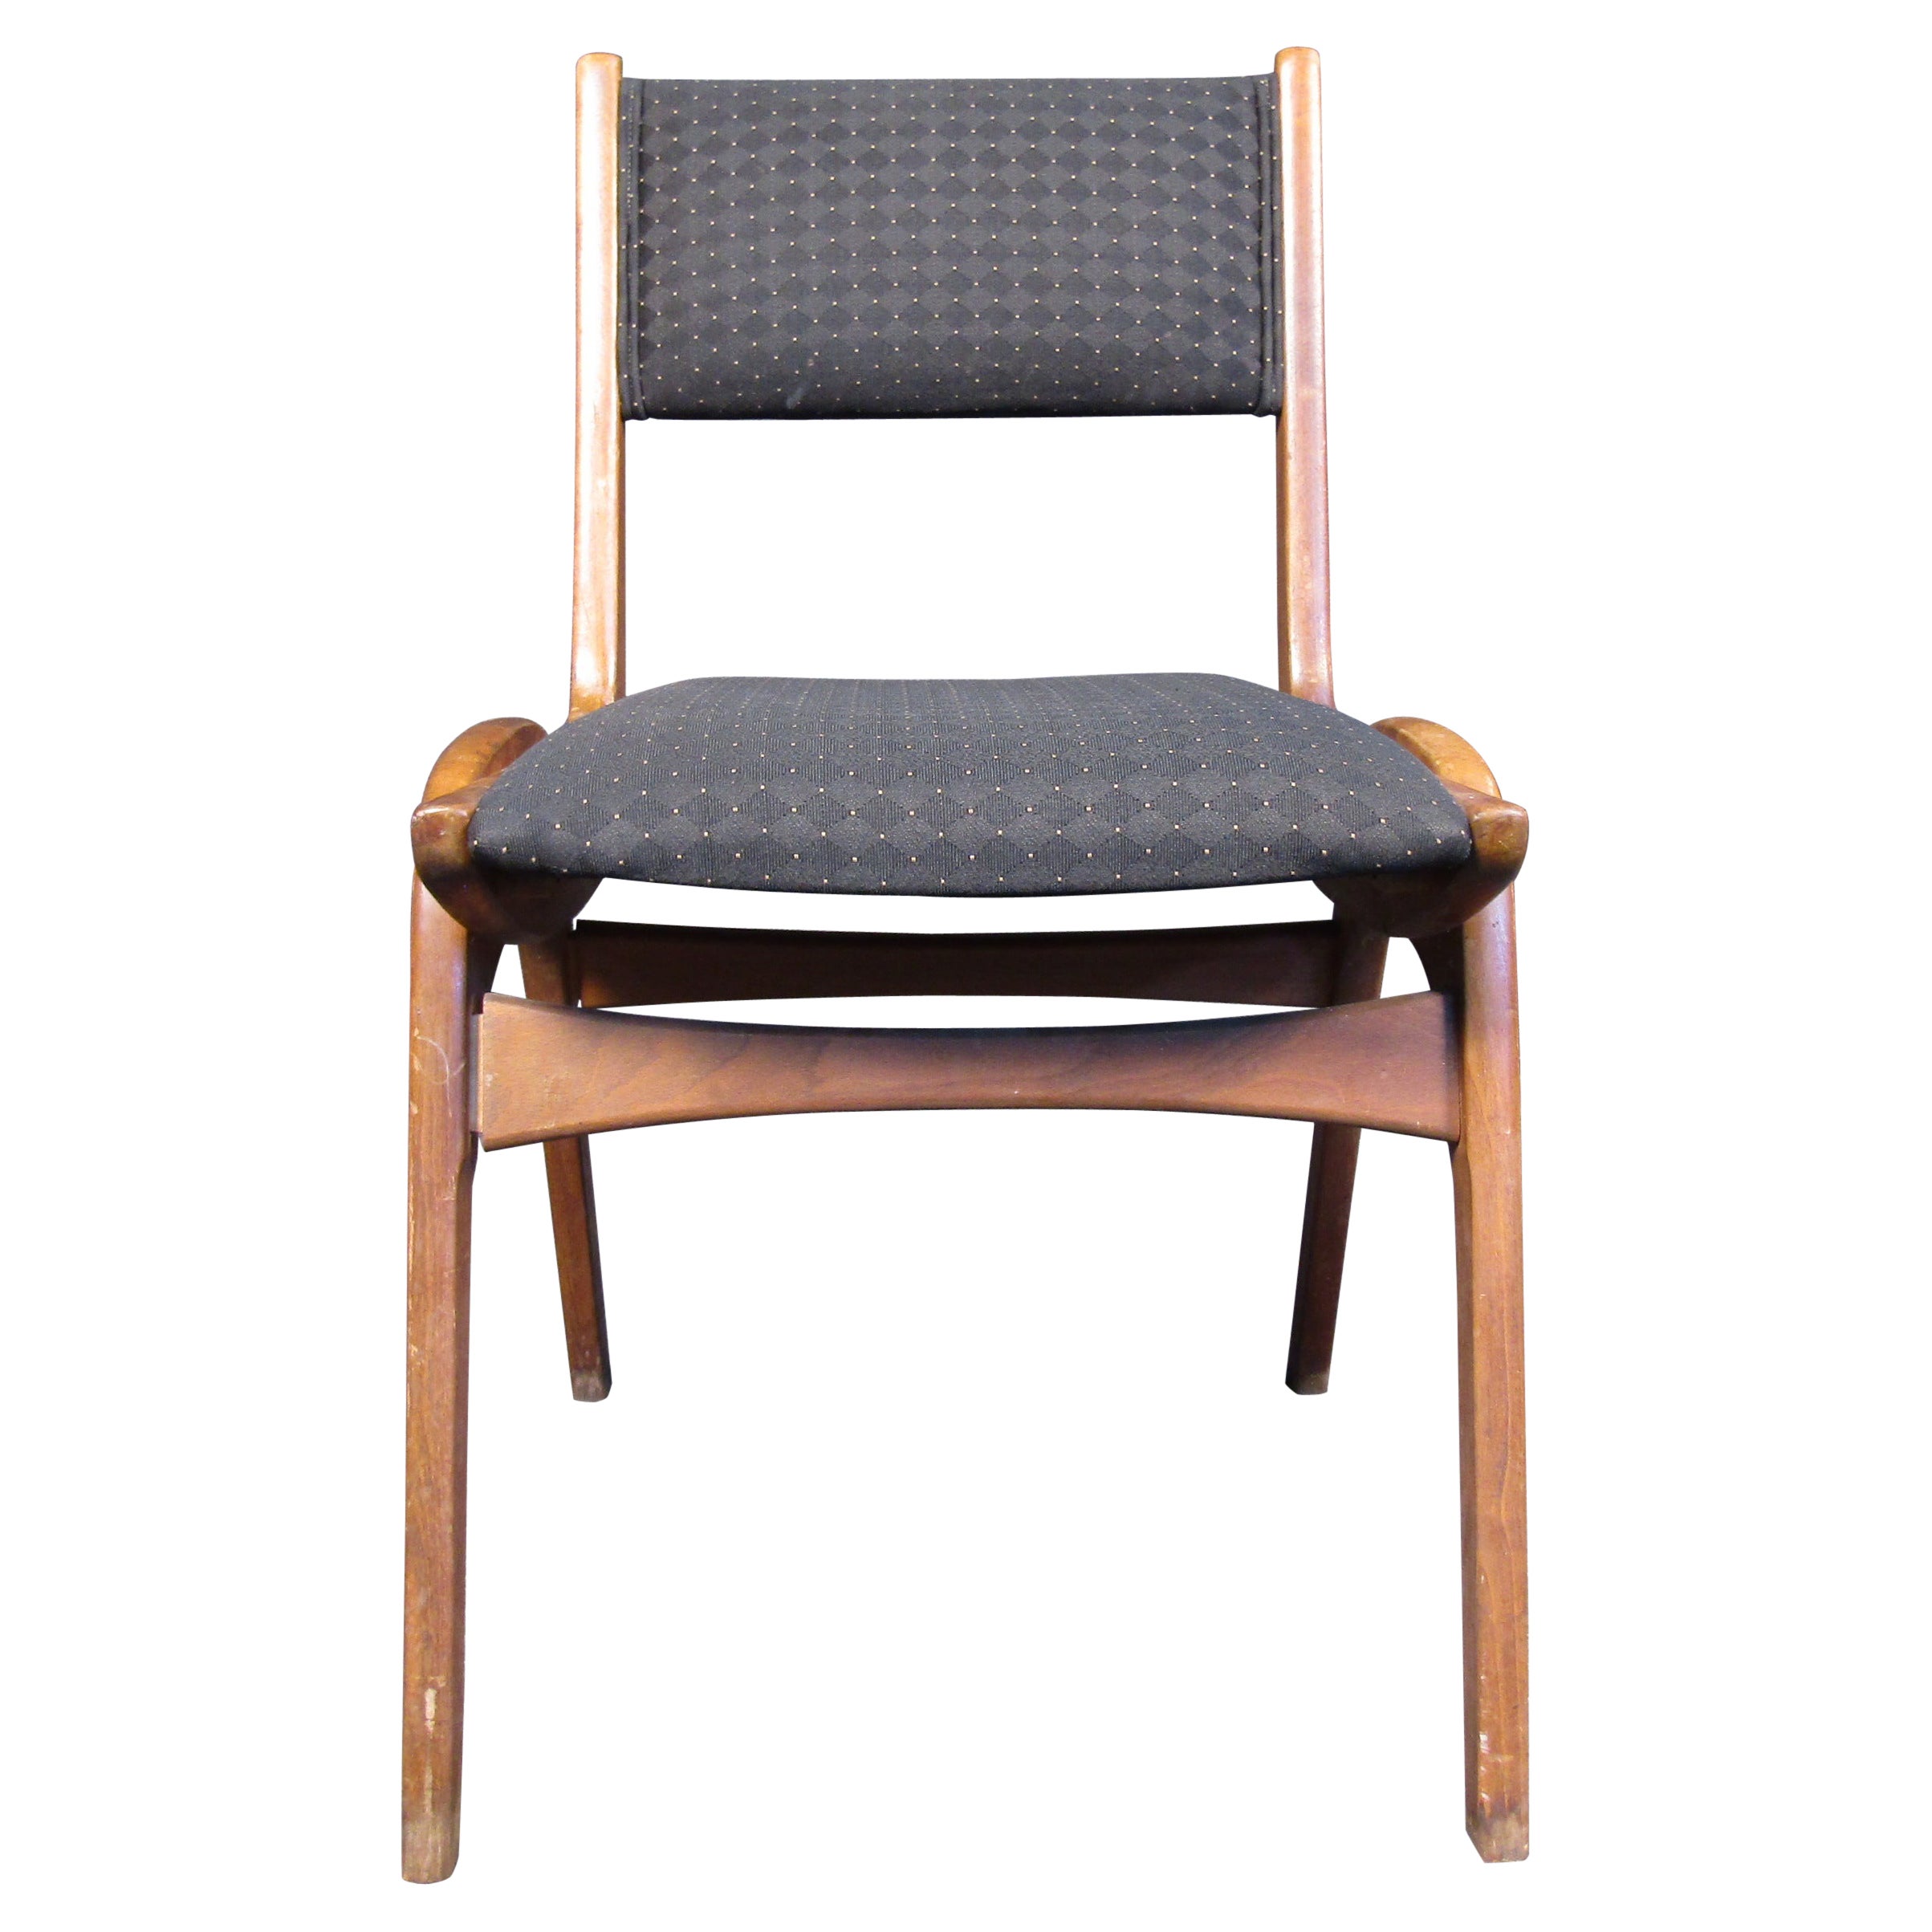 Ce magnifique fauteuil de salon de style mi-siècle moderne est doté d'un cadre en bois dur de noyer et d'un siège à haut dossier tapissé. Un ajout remarquable aux sièges de maison ou de bureau. Veuillez confirmer l'emplacement de l'article (NY ou